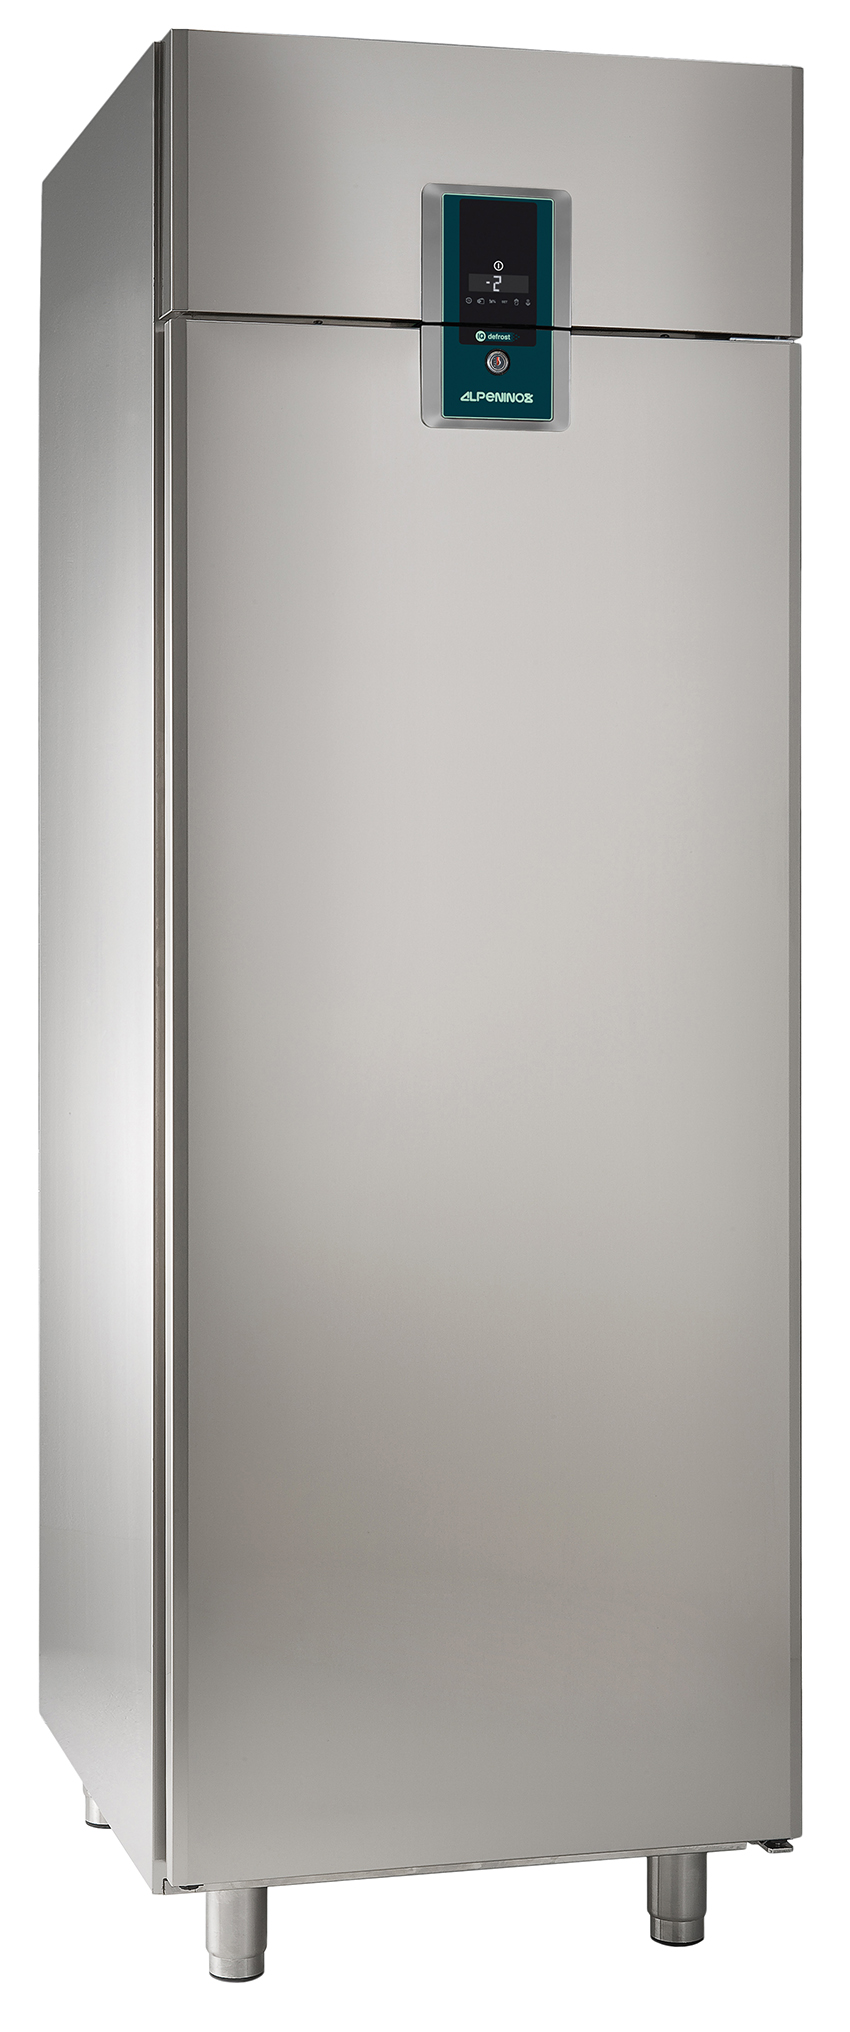 Umluft-Gewerbekühlschrank KU 702 Premium